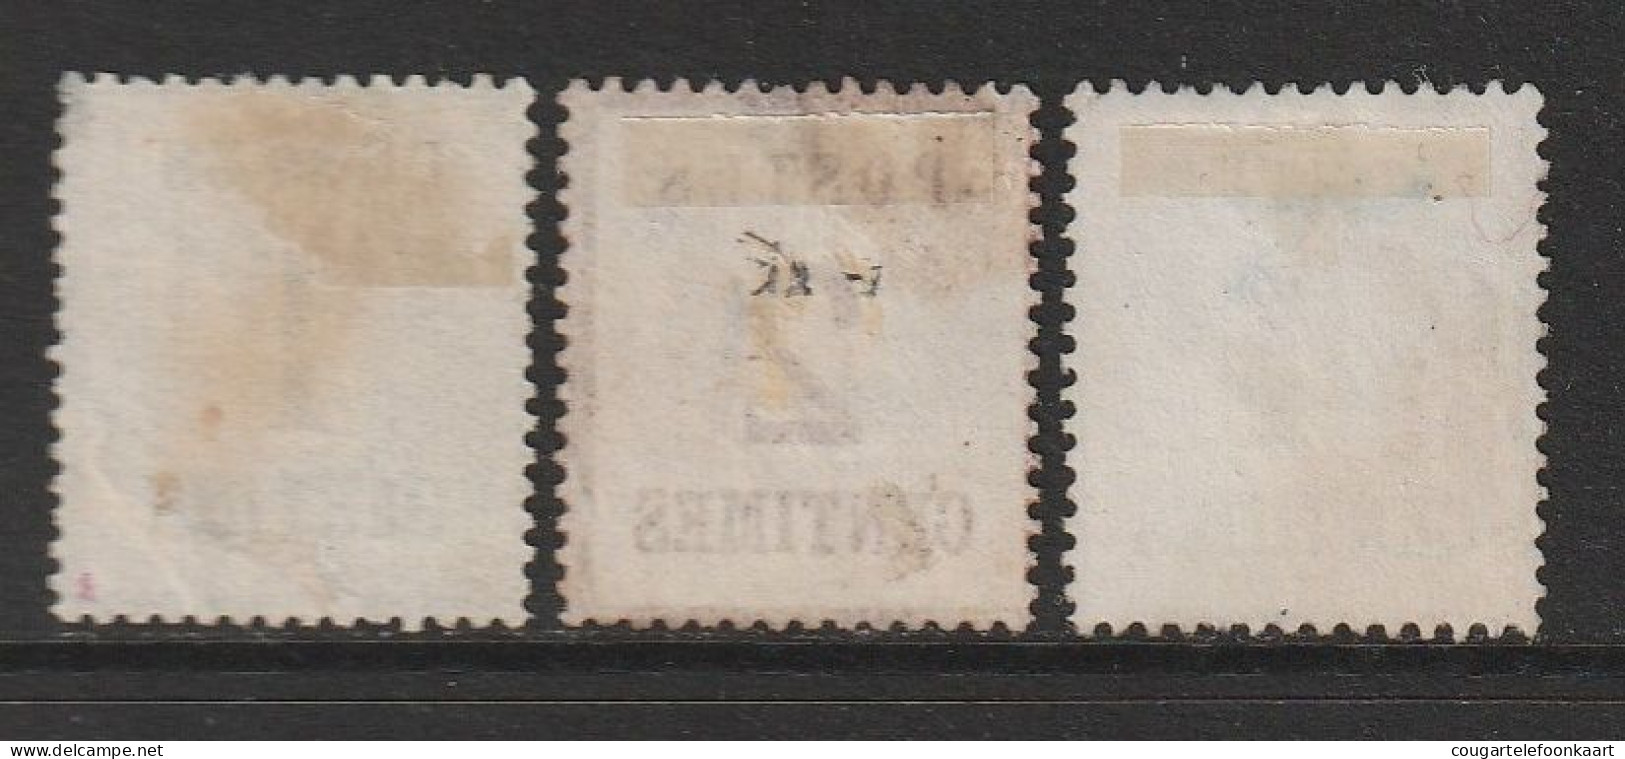 Elsass Und Lothringen, Mi. 1-2-3 Alle Type I, 1 + 2 + 4 Centime(s), Ungebraucht Ohne Gummi - Postfris